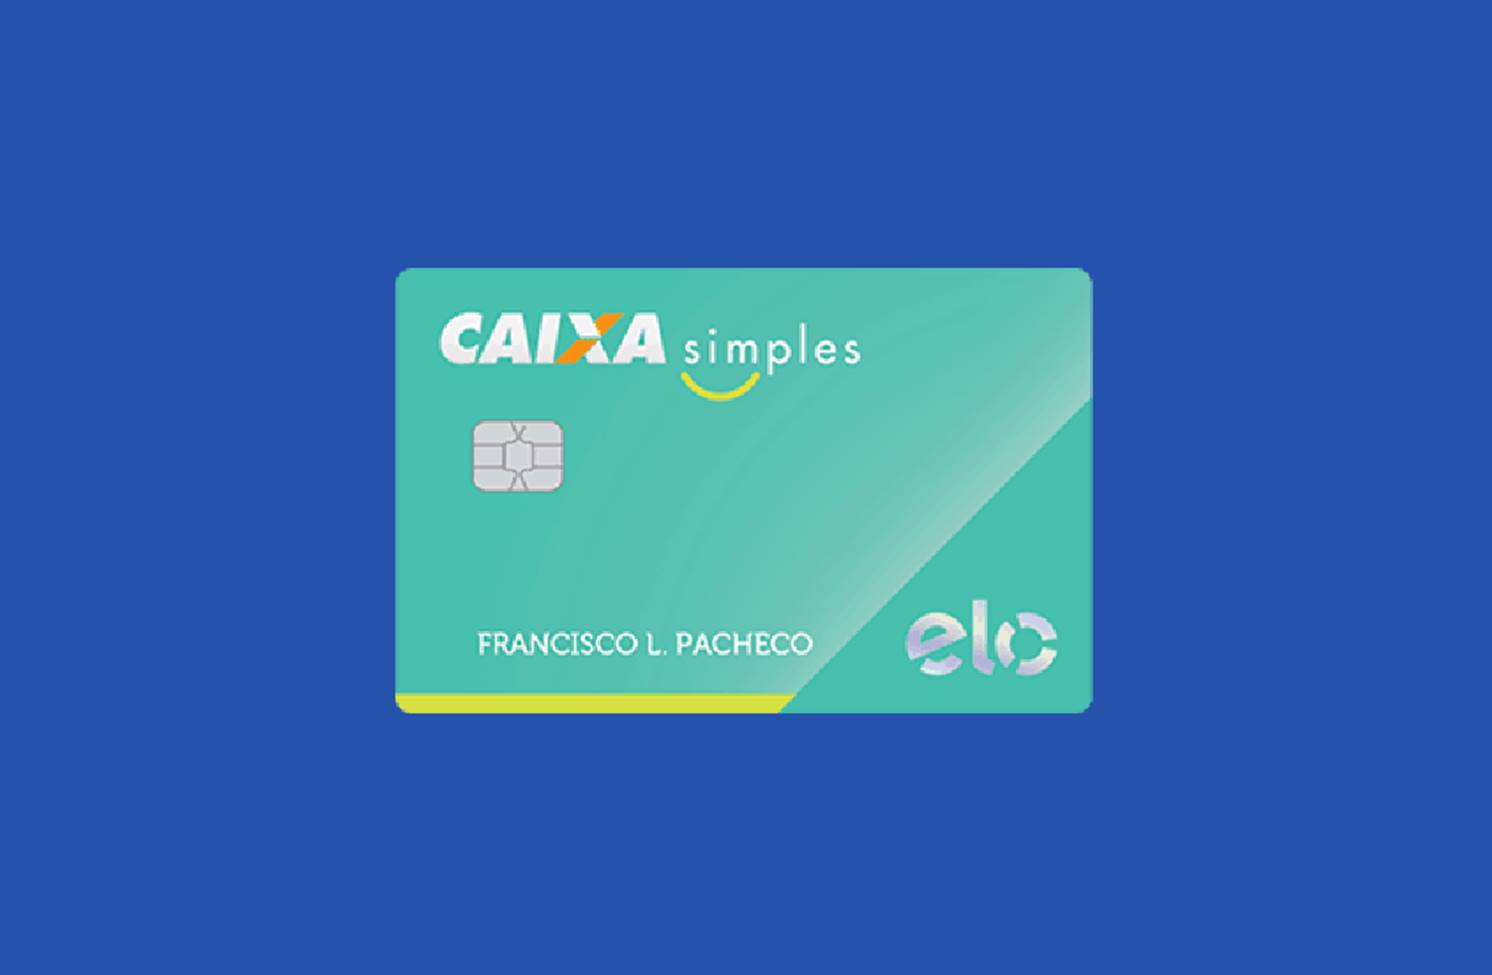 Caixa libera Cartão de Crédito mesmo com nome sujo no SPC/Serasa